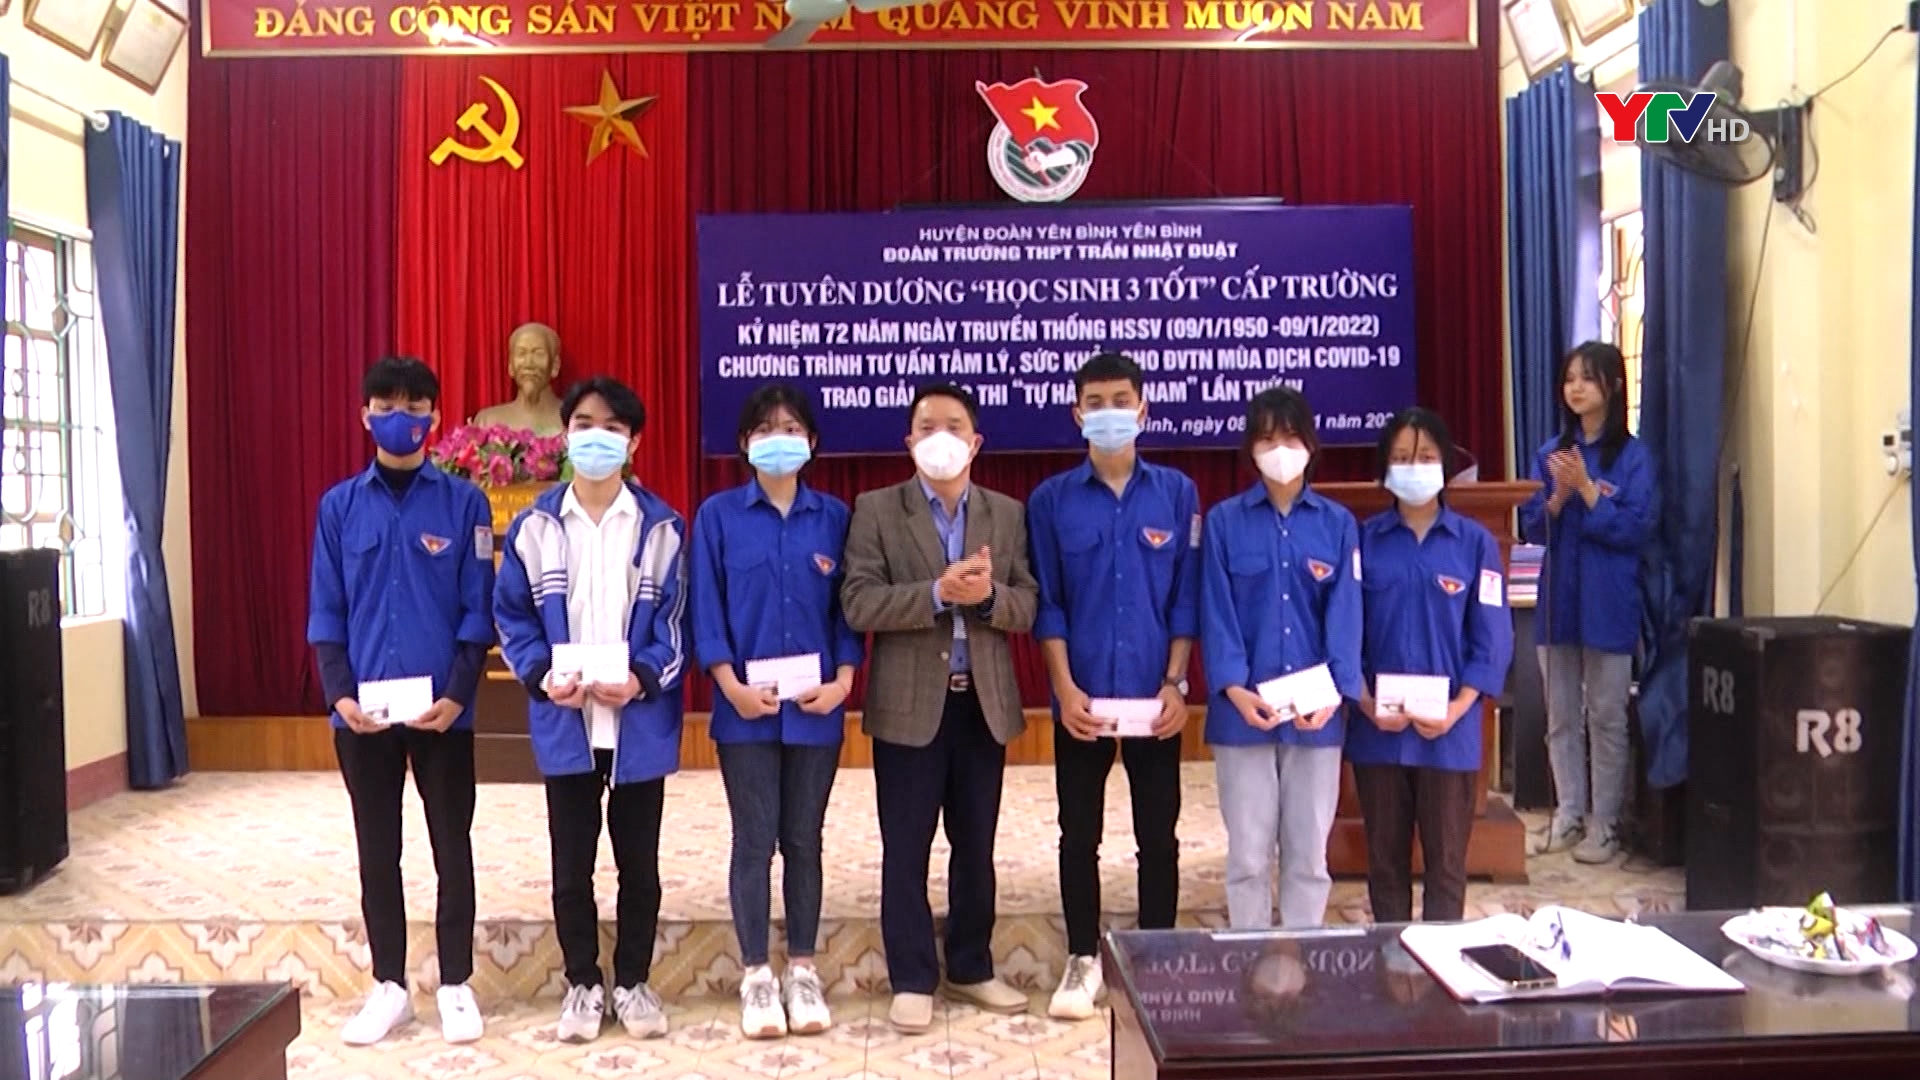 Trường THPT Trần Nhật Duật, huyện Yên Bình tuyên dương “Học sinh 3 tốt”